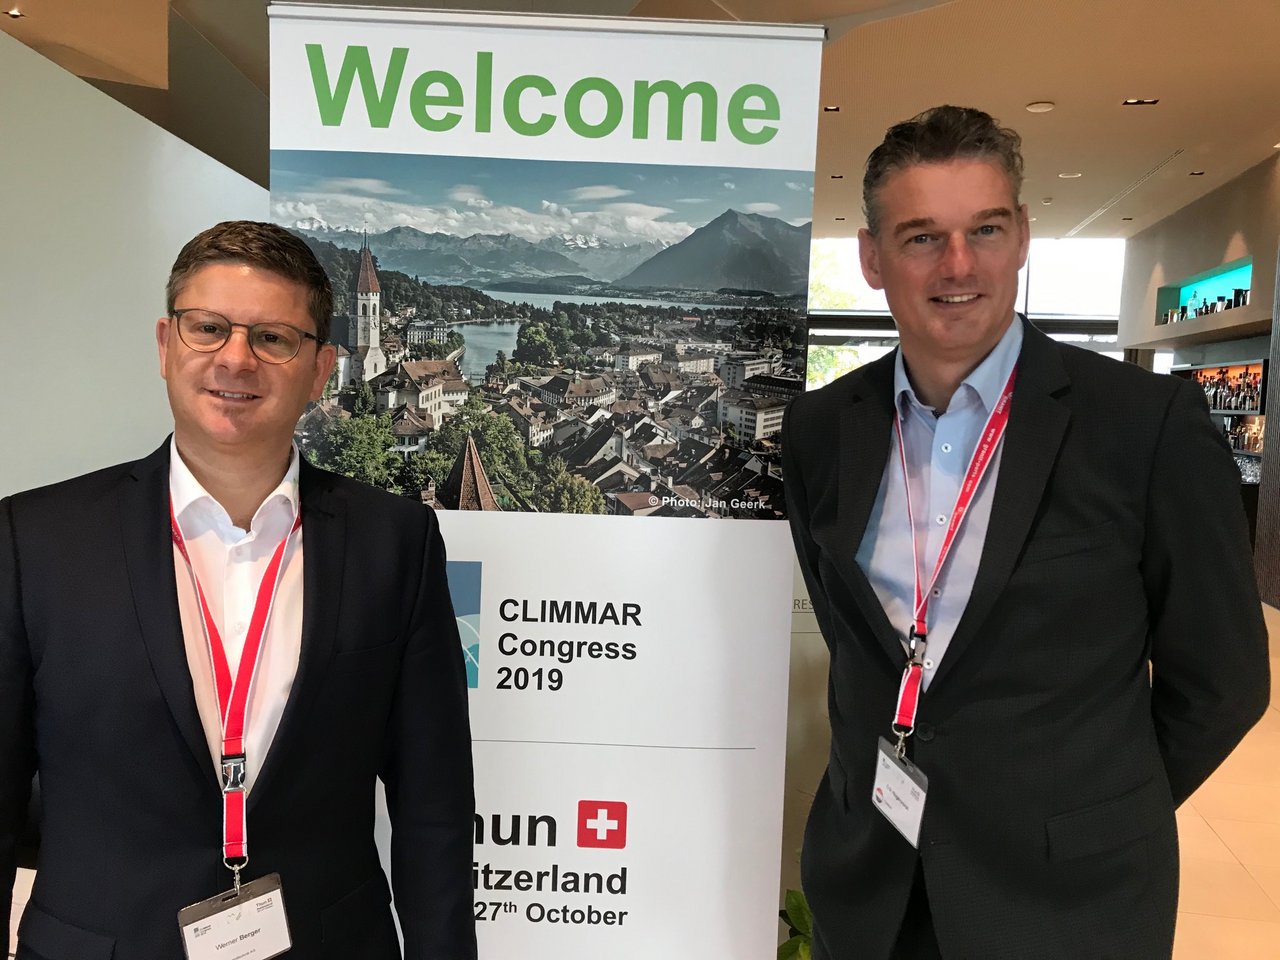 Climmar-Präsident Erik Hogervorst und Werner Berger, Climmar-Delegierter der Schweiz im Branchenverband Agrotec Suisse. (Bild akr)